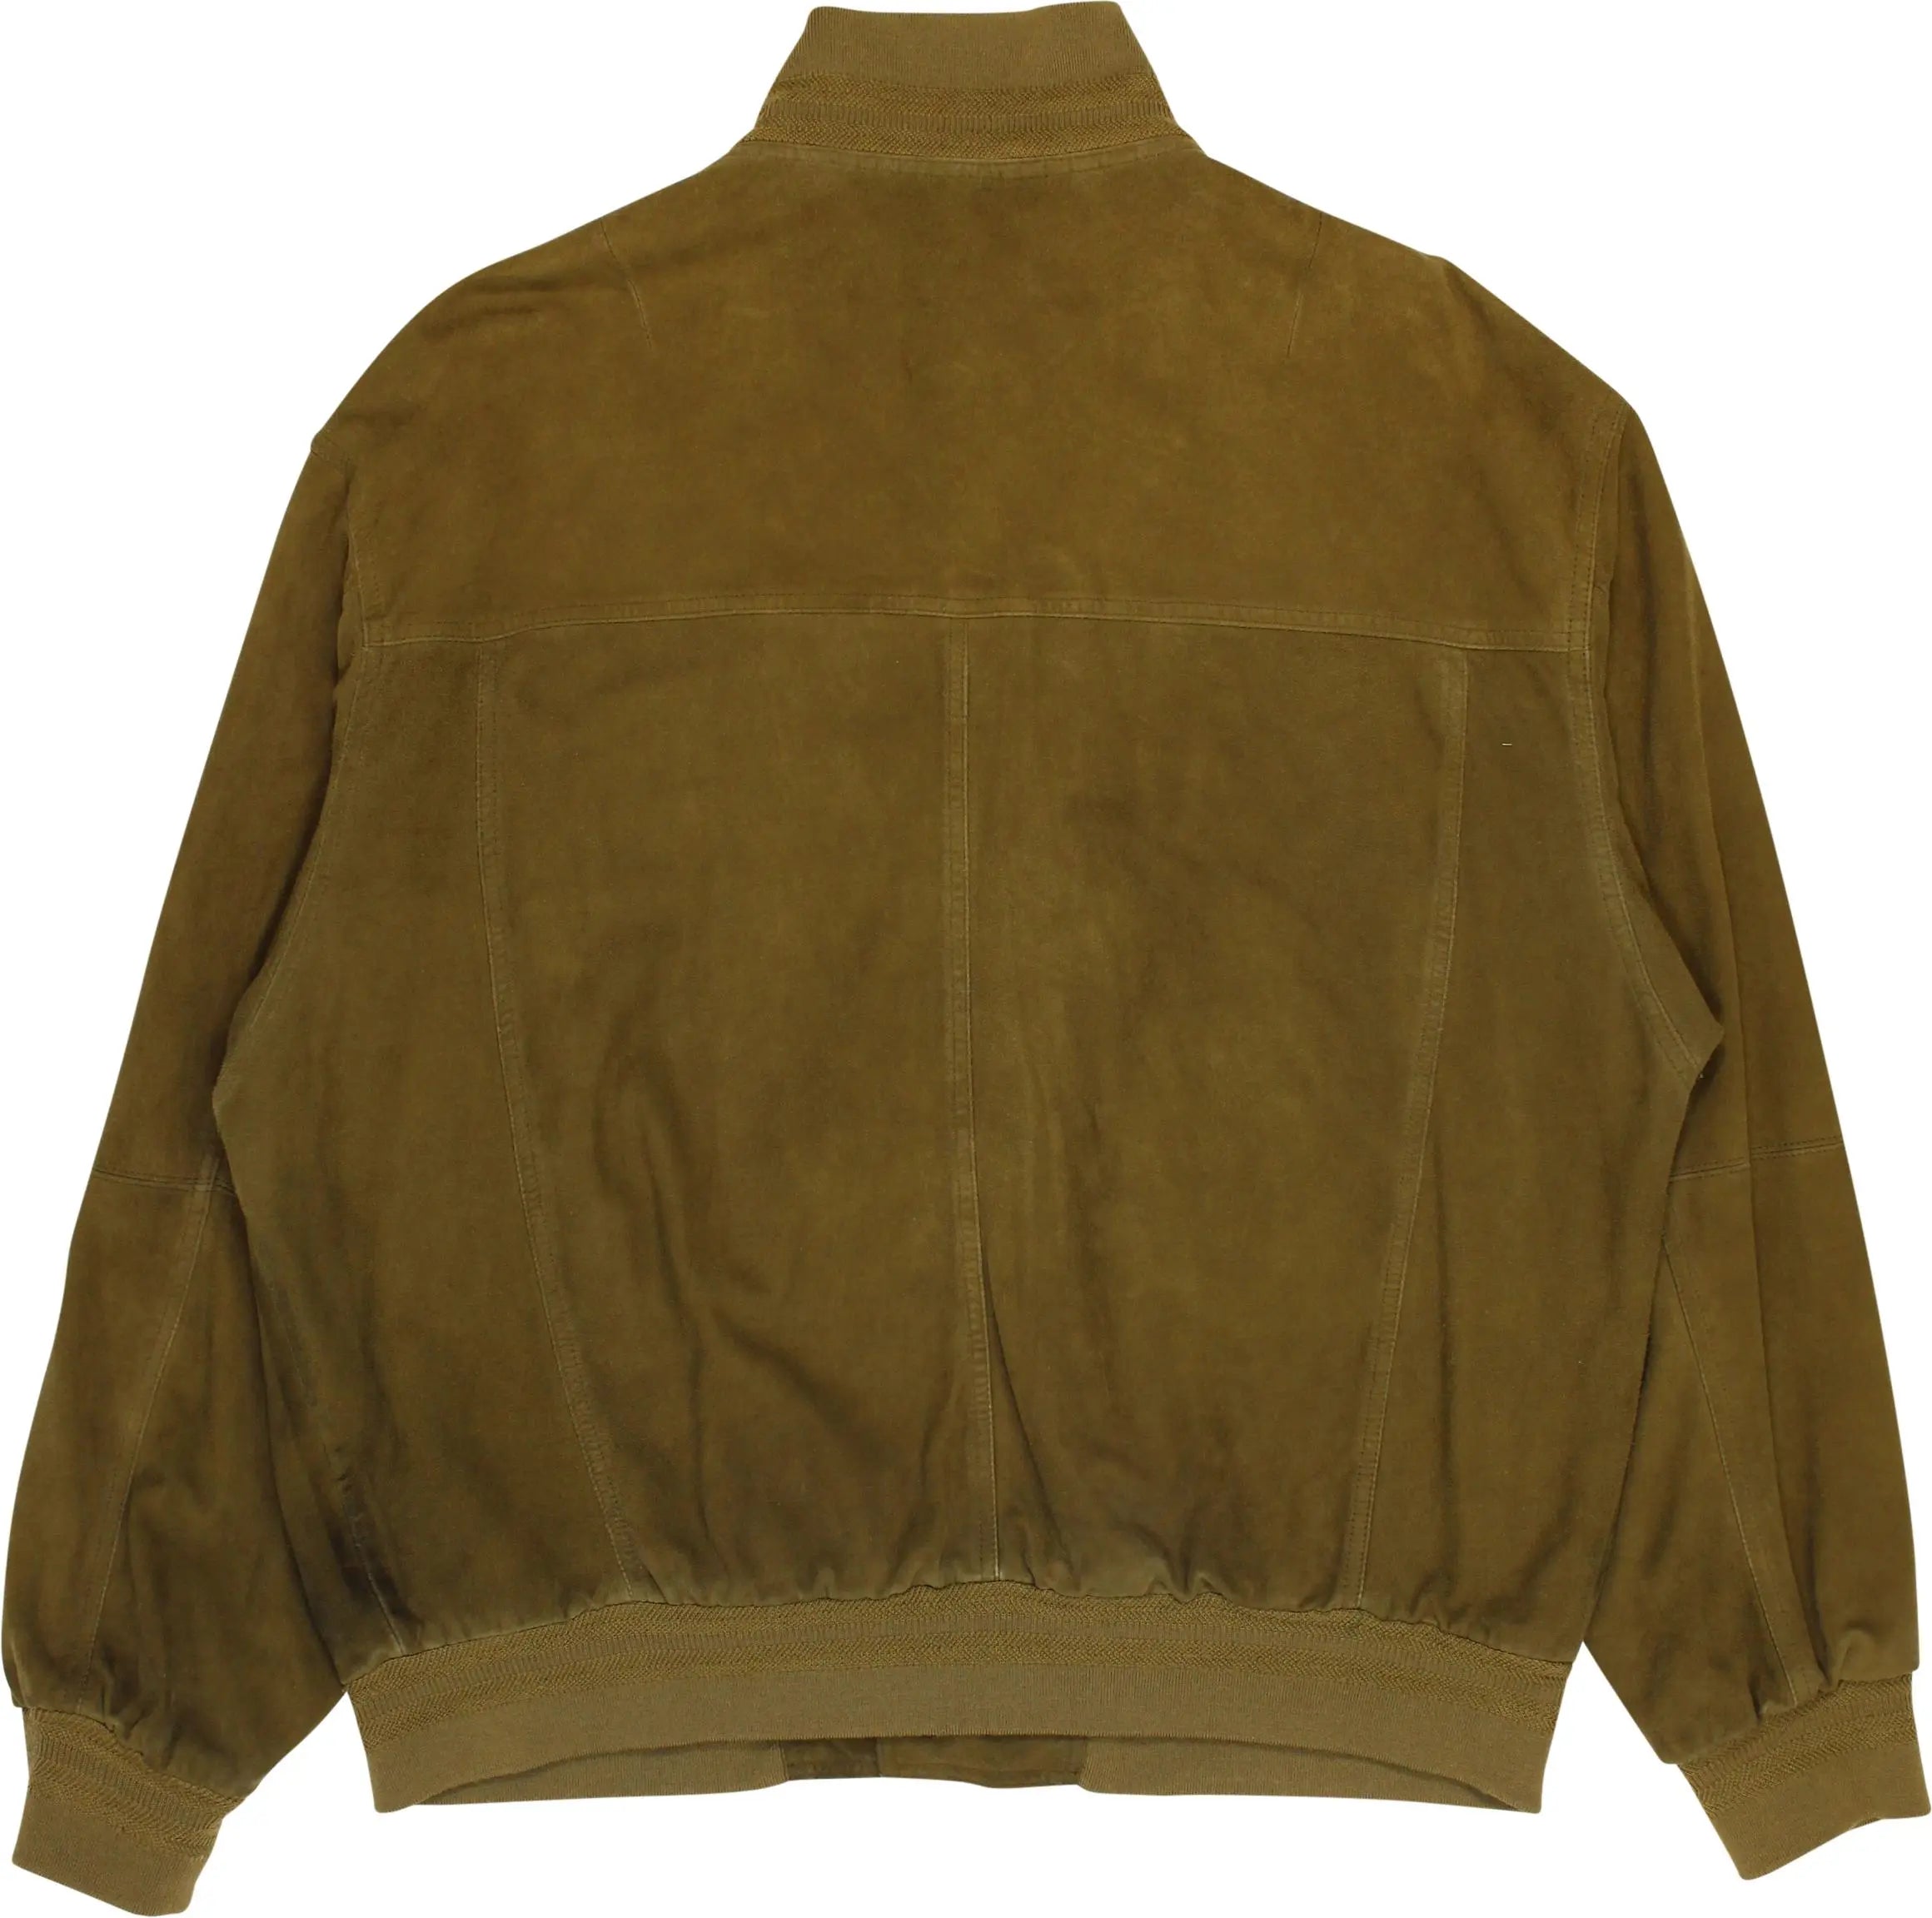 Bogner - Green Jacket by Bogner- ThriftTale.com - Vintage and second handclothing